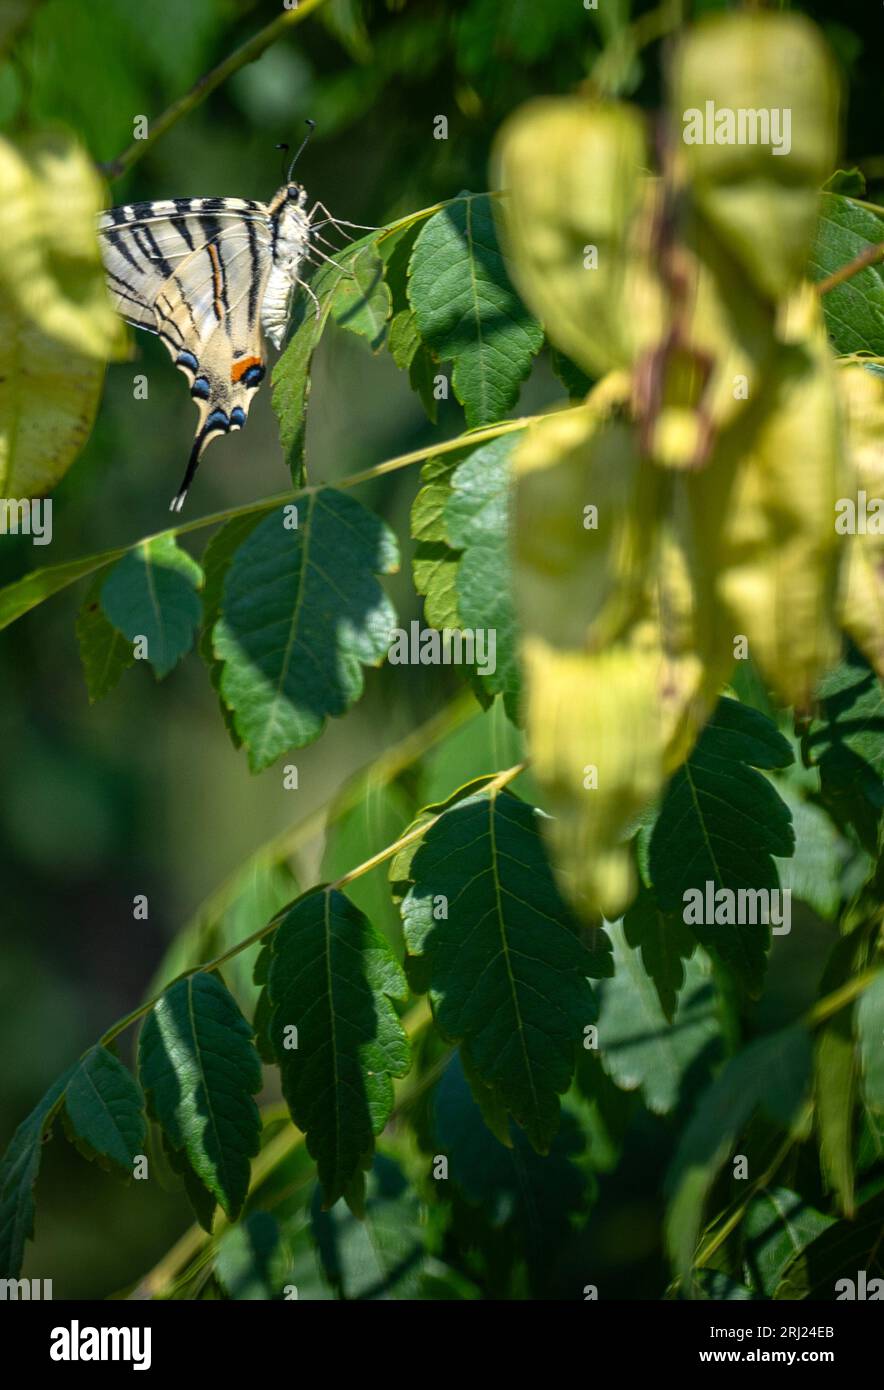 Malomirovo Bulgarie 20 août 2023 : les papillons de queue d'aronde se cachent dans les arbres, forte vague de chaleur solaire a causé la décomposition de la chlorophylle dans les feuilles de feuilles deviennent brunes et cassantes combinées avec des conditions de sol sec de réduire la chute de pluie estivale. :Clifford Norton Alamy en direct Banque D'Images